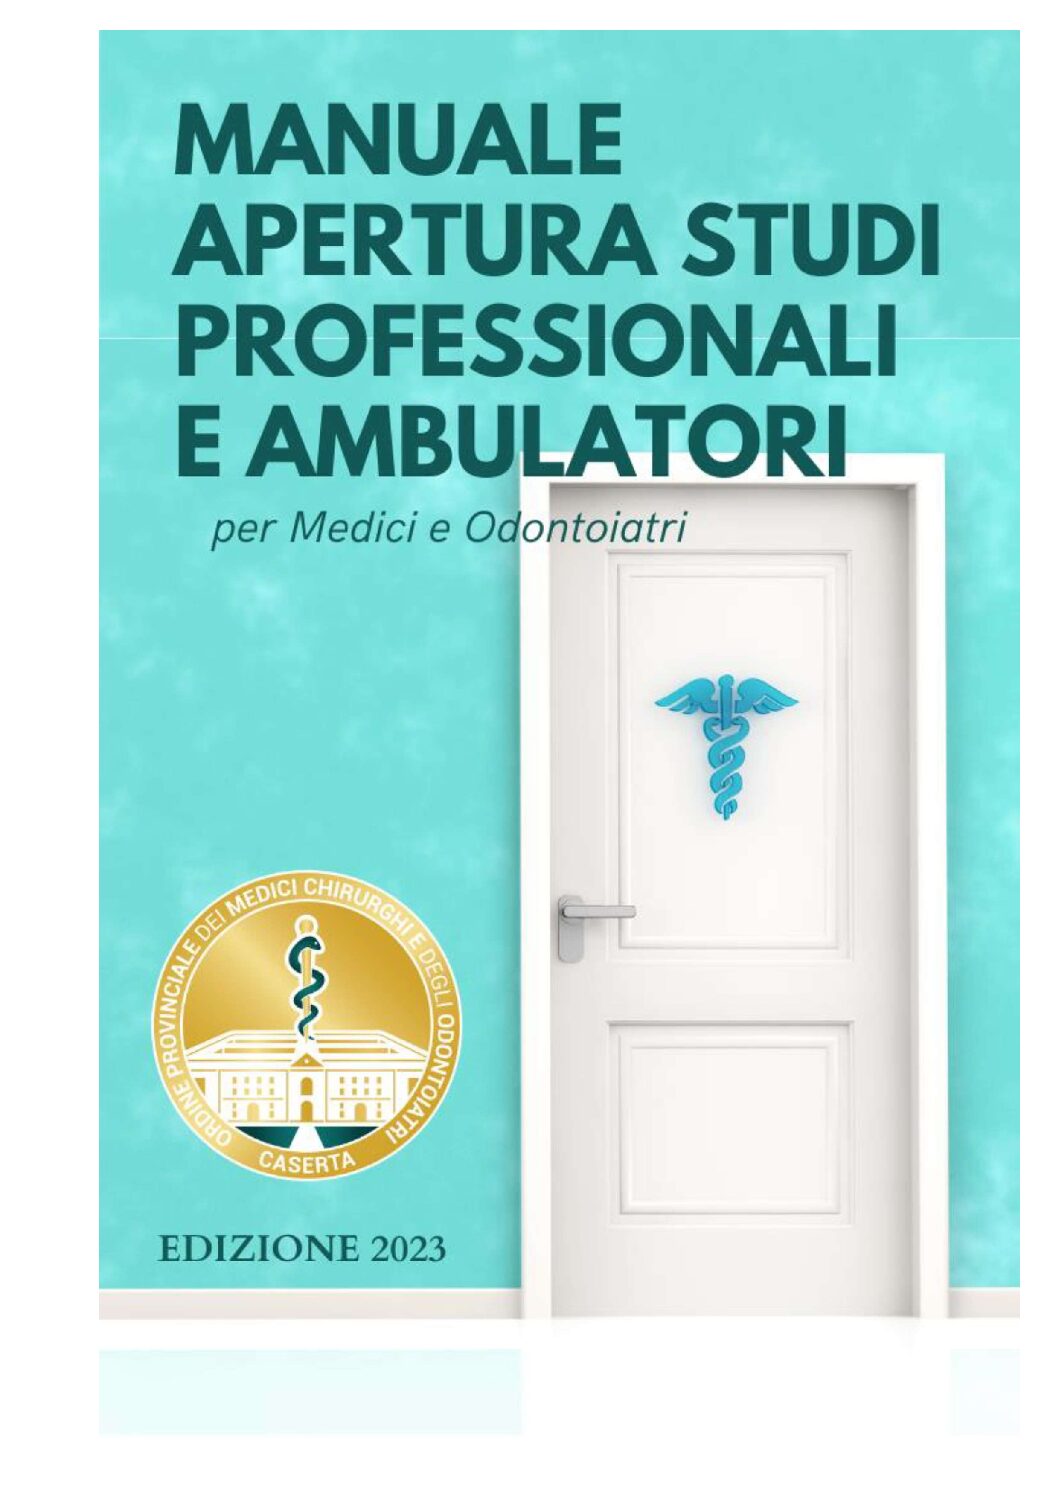 O.M.C.E.O. Caserta – Manuale Apertura Studi Professionali e Ambulatori per Medici e Odontoiatri.